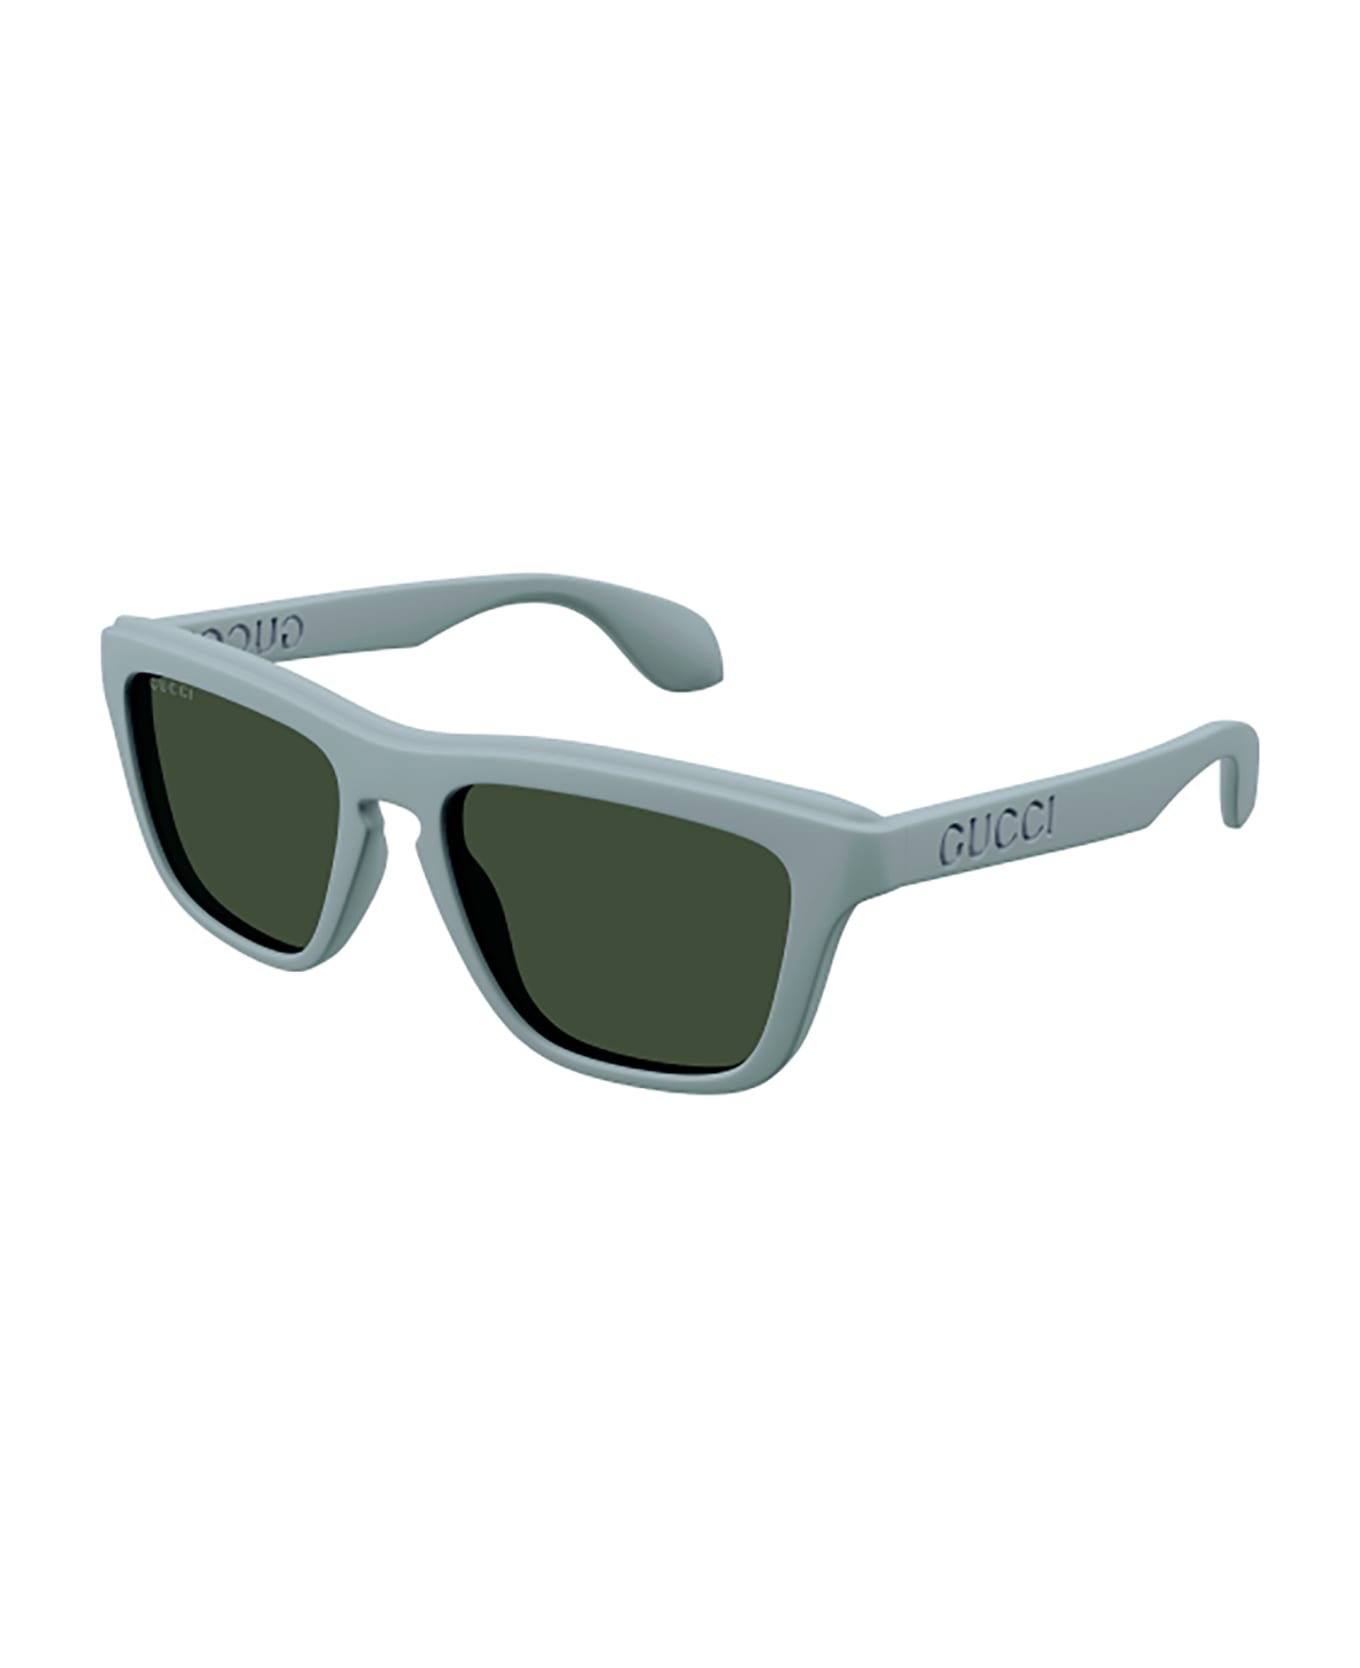 Gucci Eyewear GG1571S Sunglasses - Light Blue Light Blue